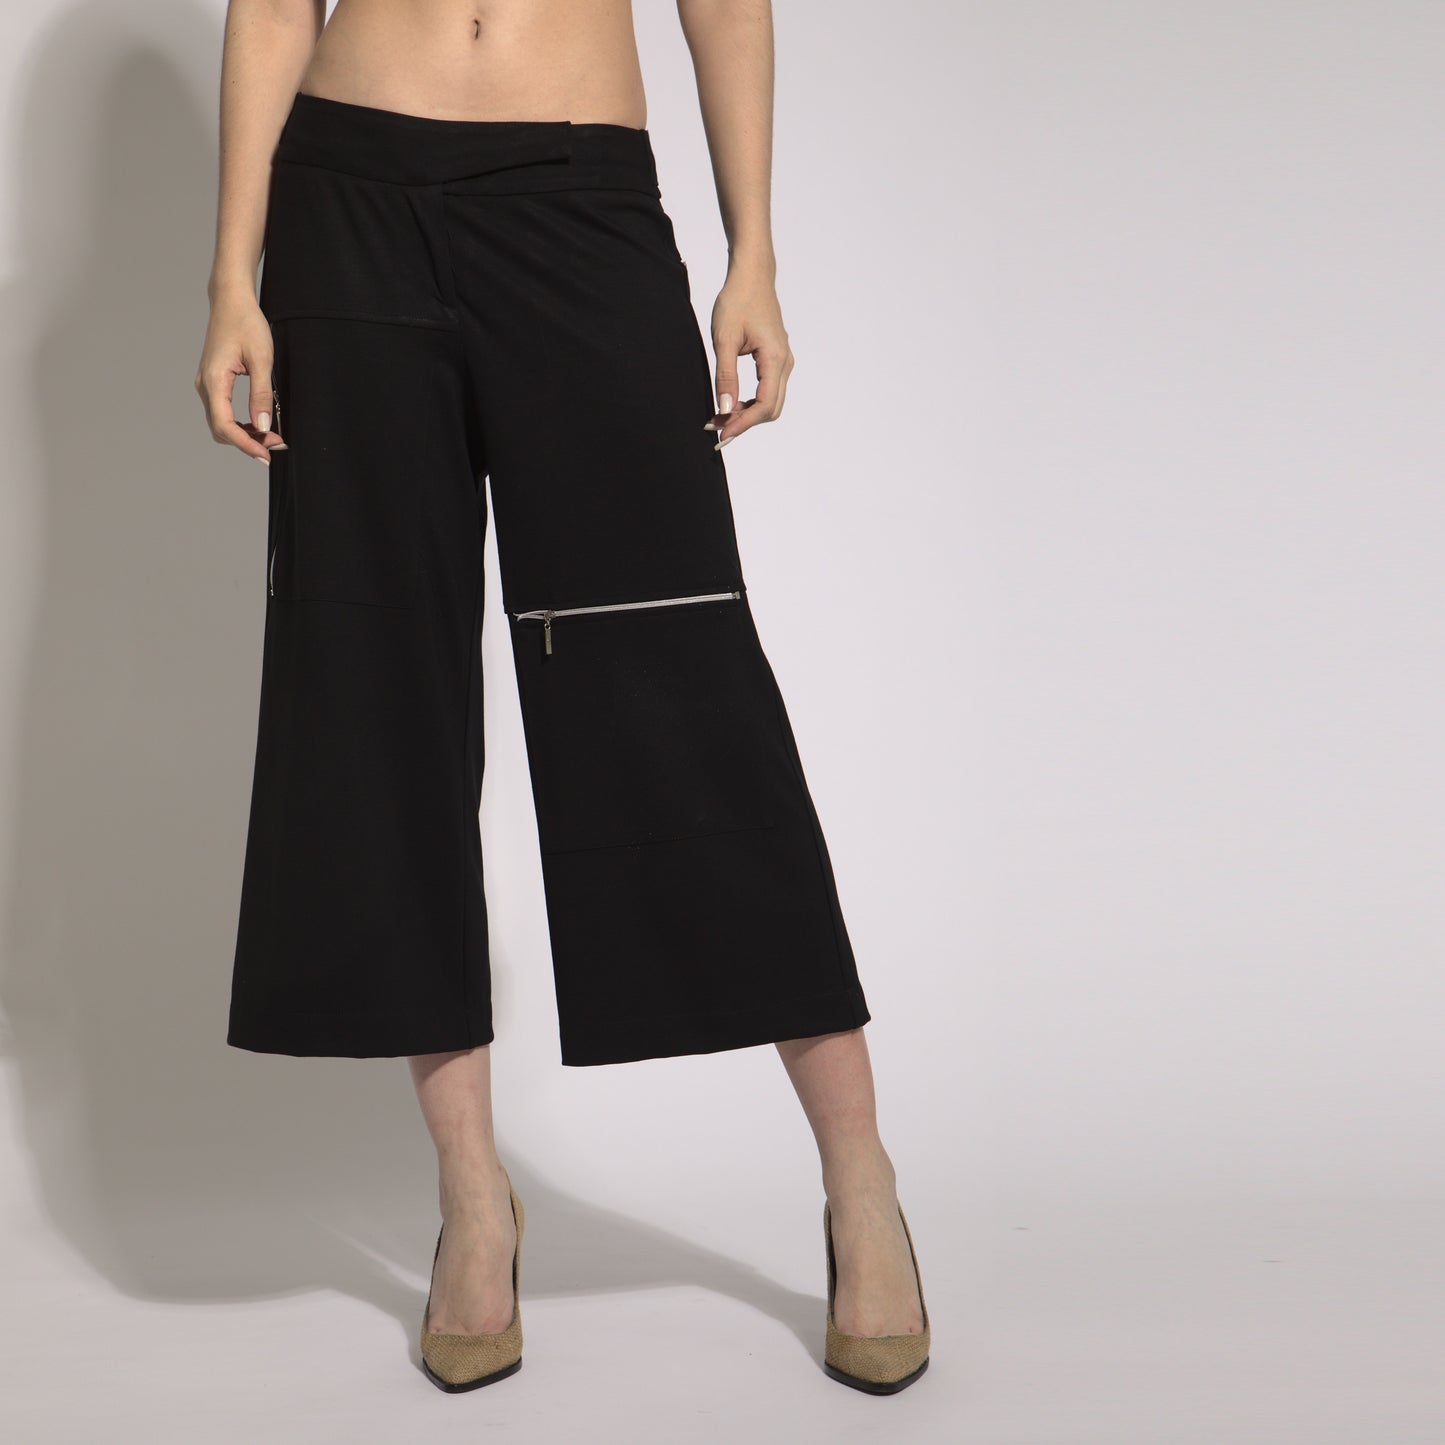 Charllote - Pants visible zipper pockets